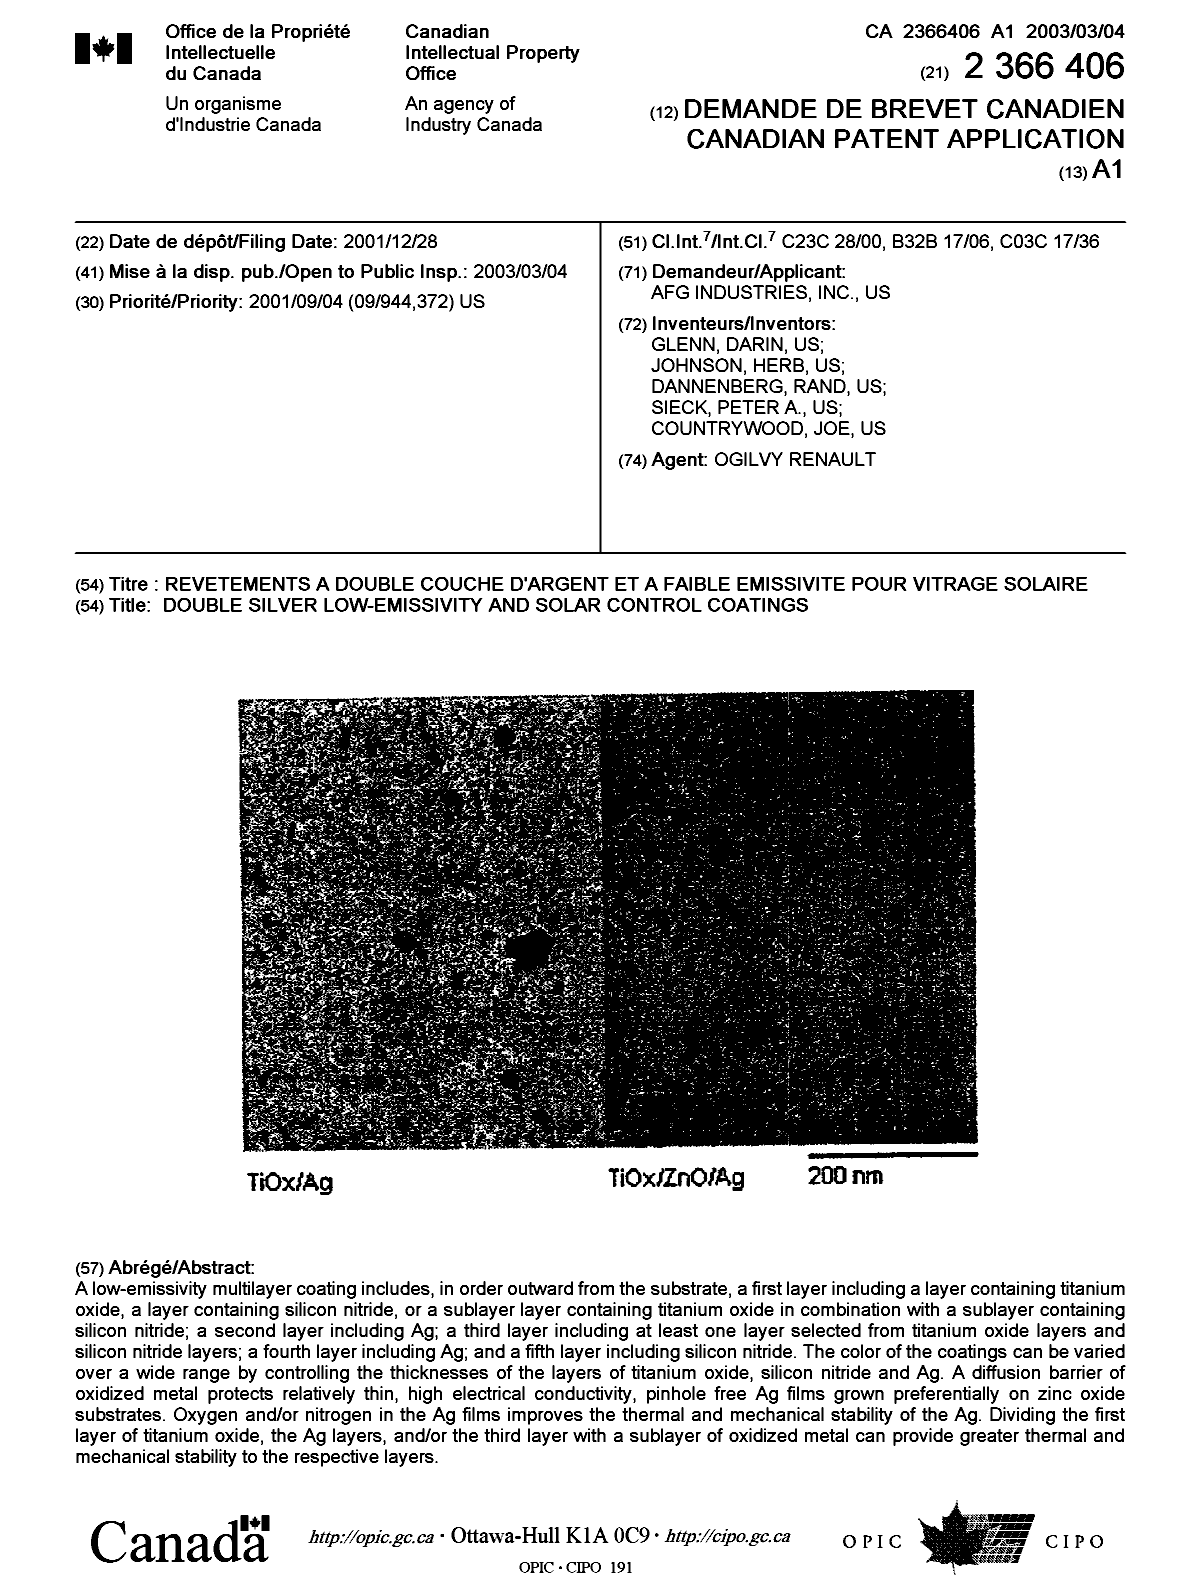 Document de brevet canadien 2366406. Page couverture 20030207. Image 1 de 1